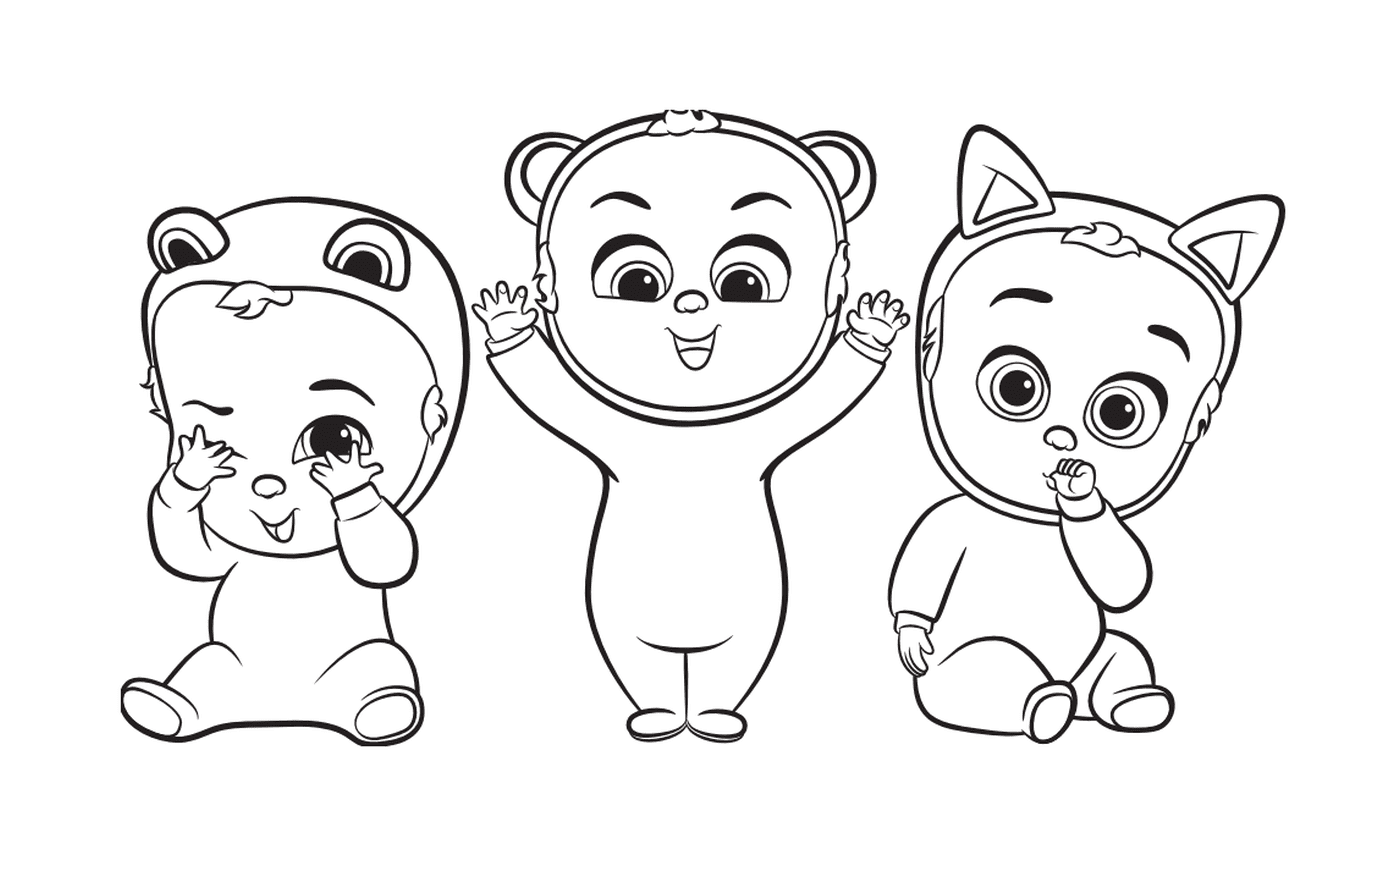   Trois bébés dessinés sont alignés 